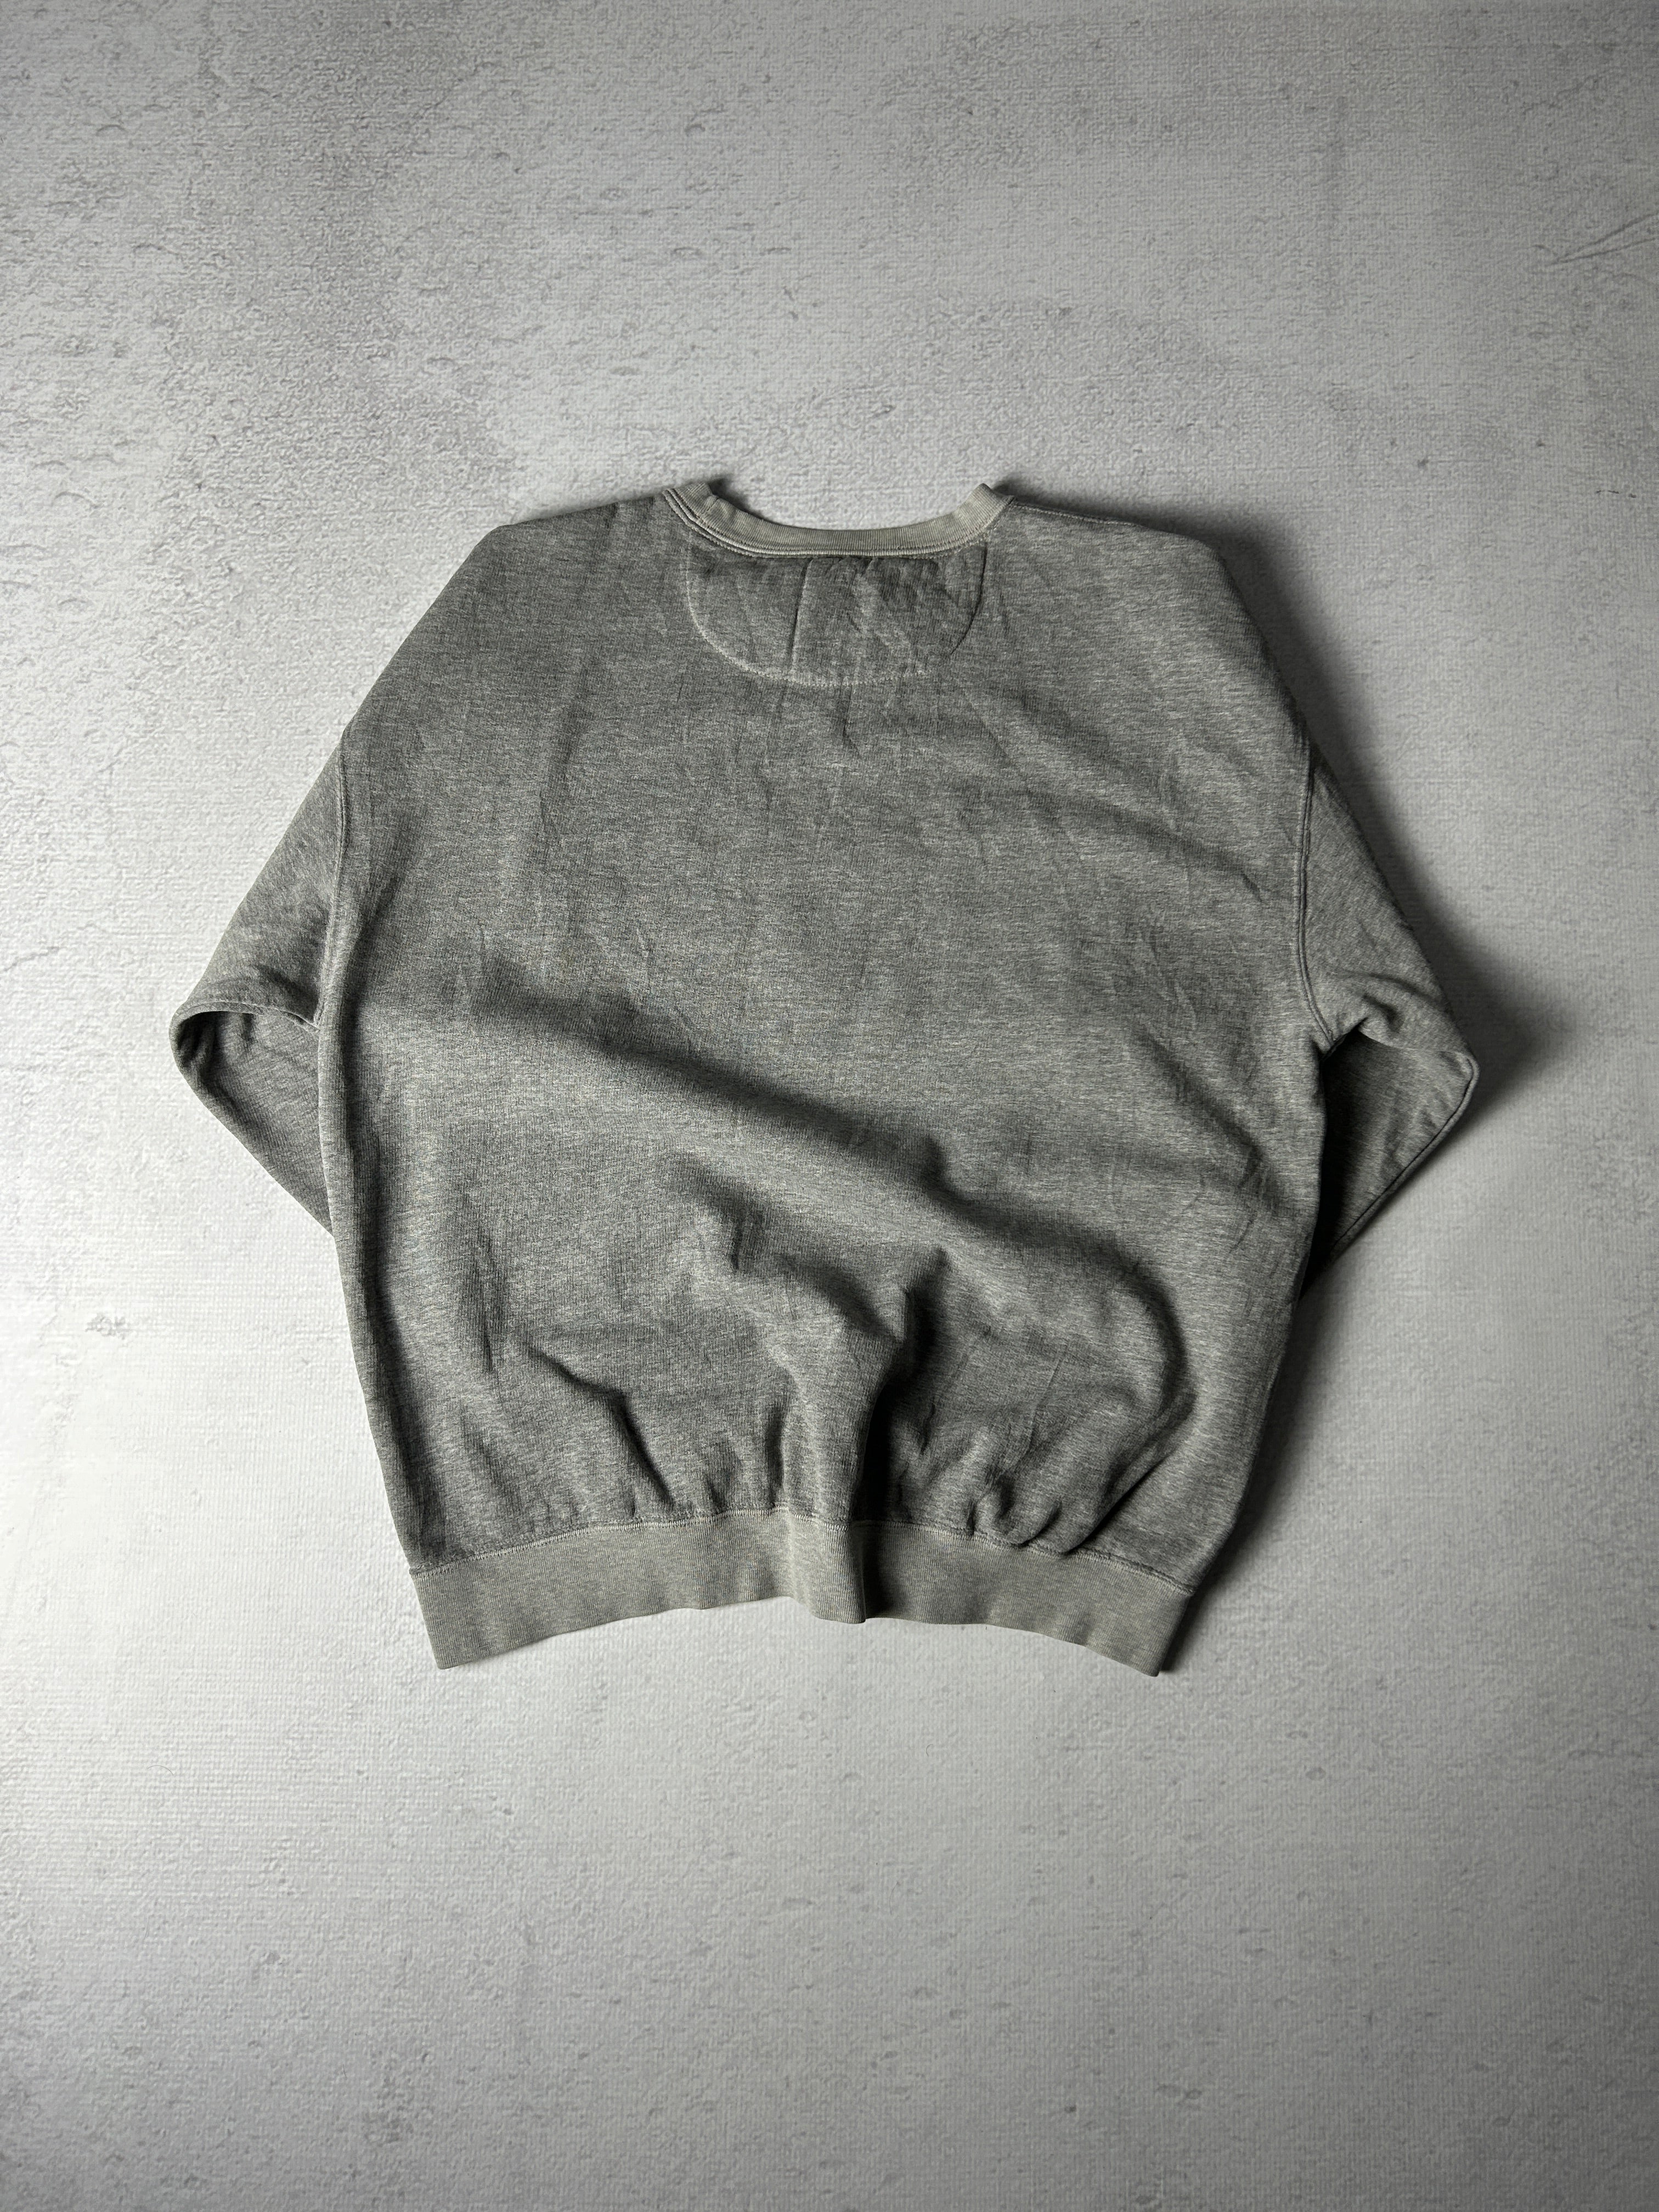 Vintage Chaps Ralph Lauren Crewneck Sweatshirt - Men's Large